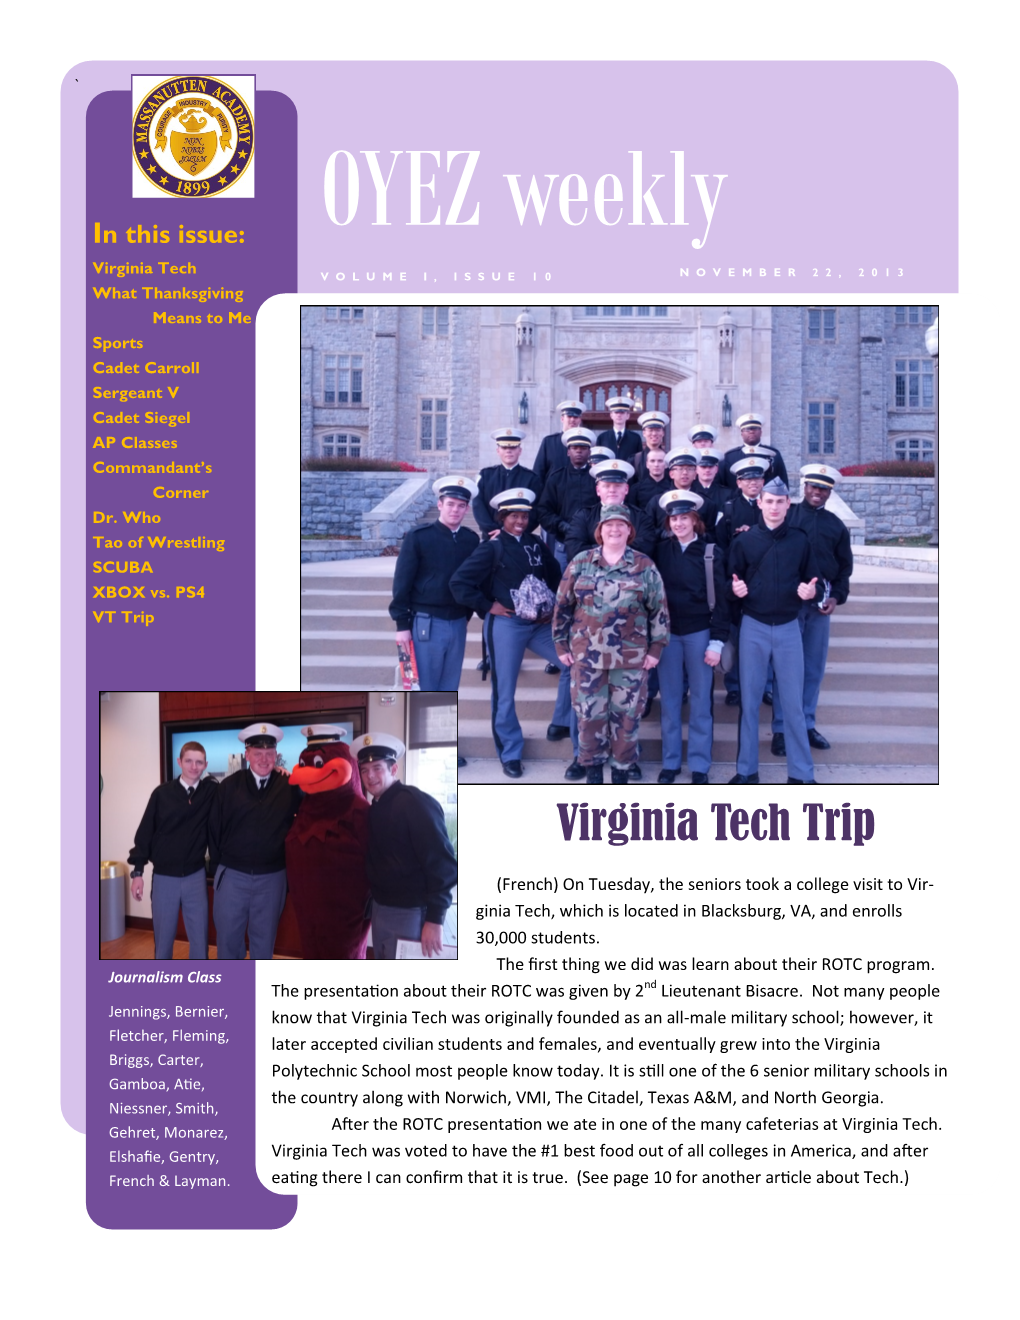 Virginia Tech Trip